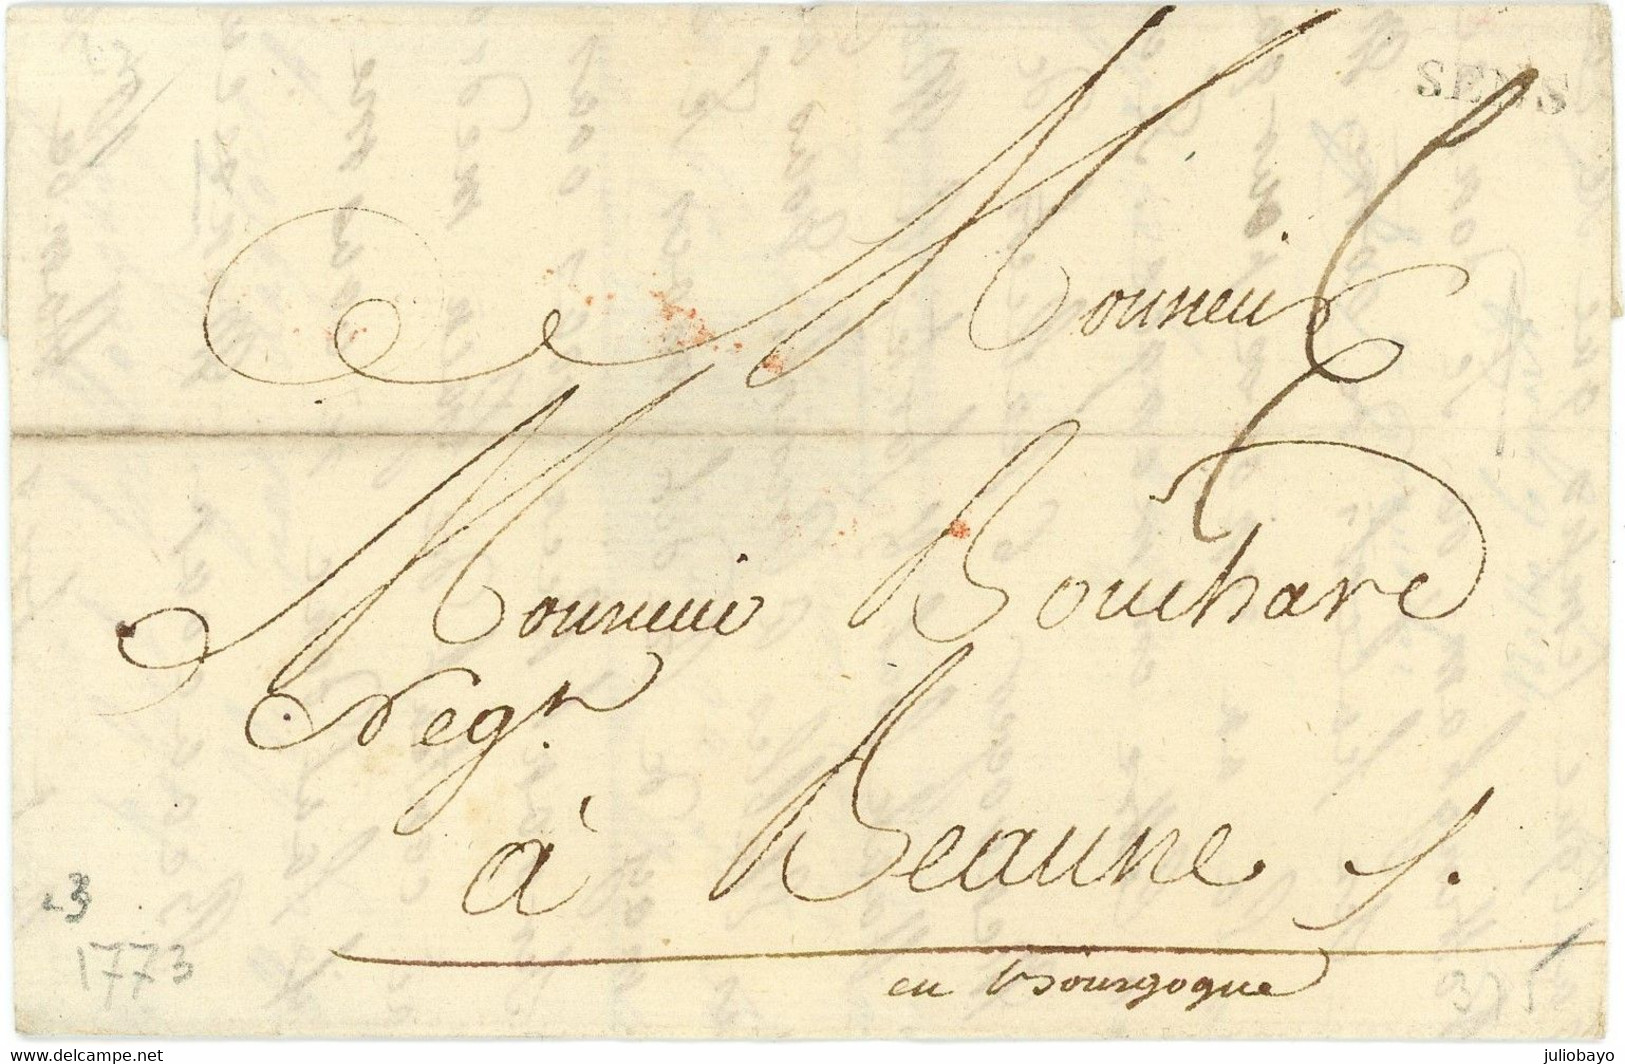 Promo 1773 Lettre De SENS Vers Beaune Pour M Bouchard Négociant , Encre Doré , Superbe - 1701-1800: Precursors XVIII